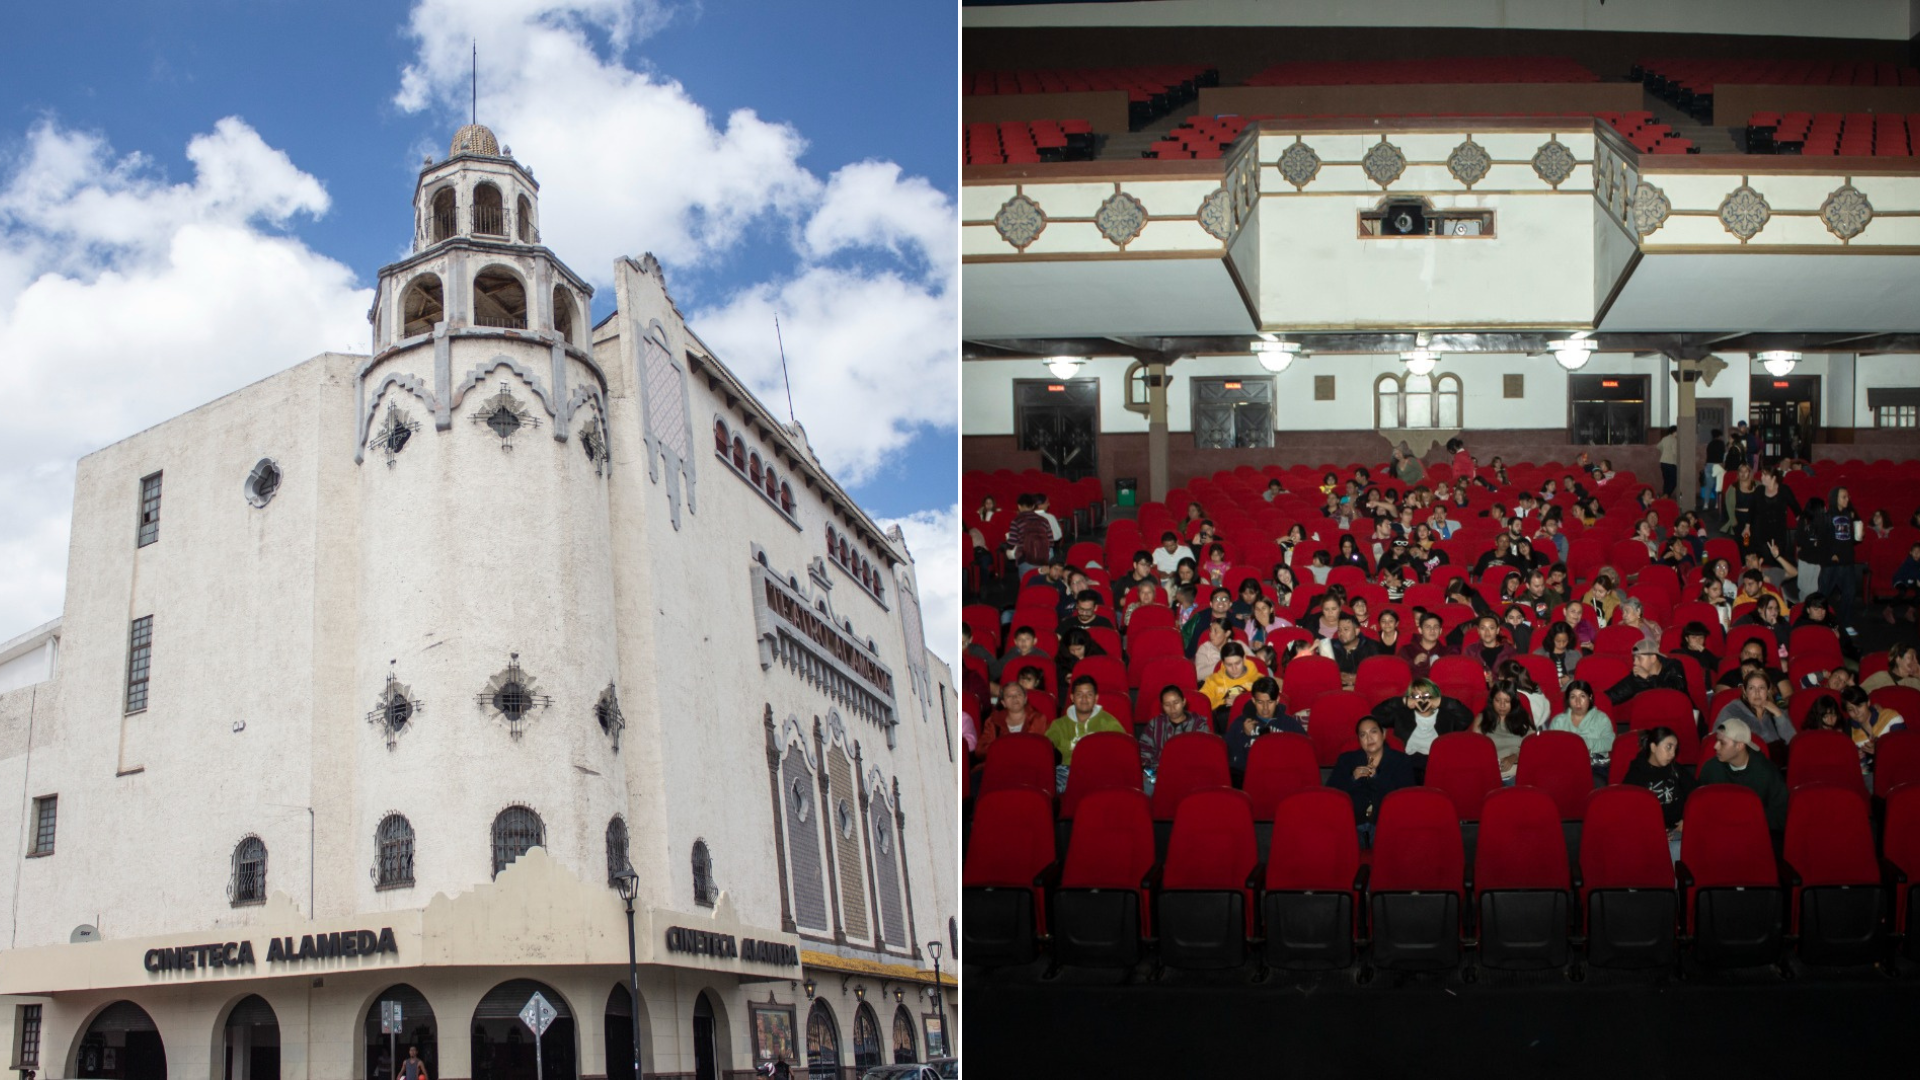 Cine mexicano en Cineteca Alameda